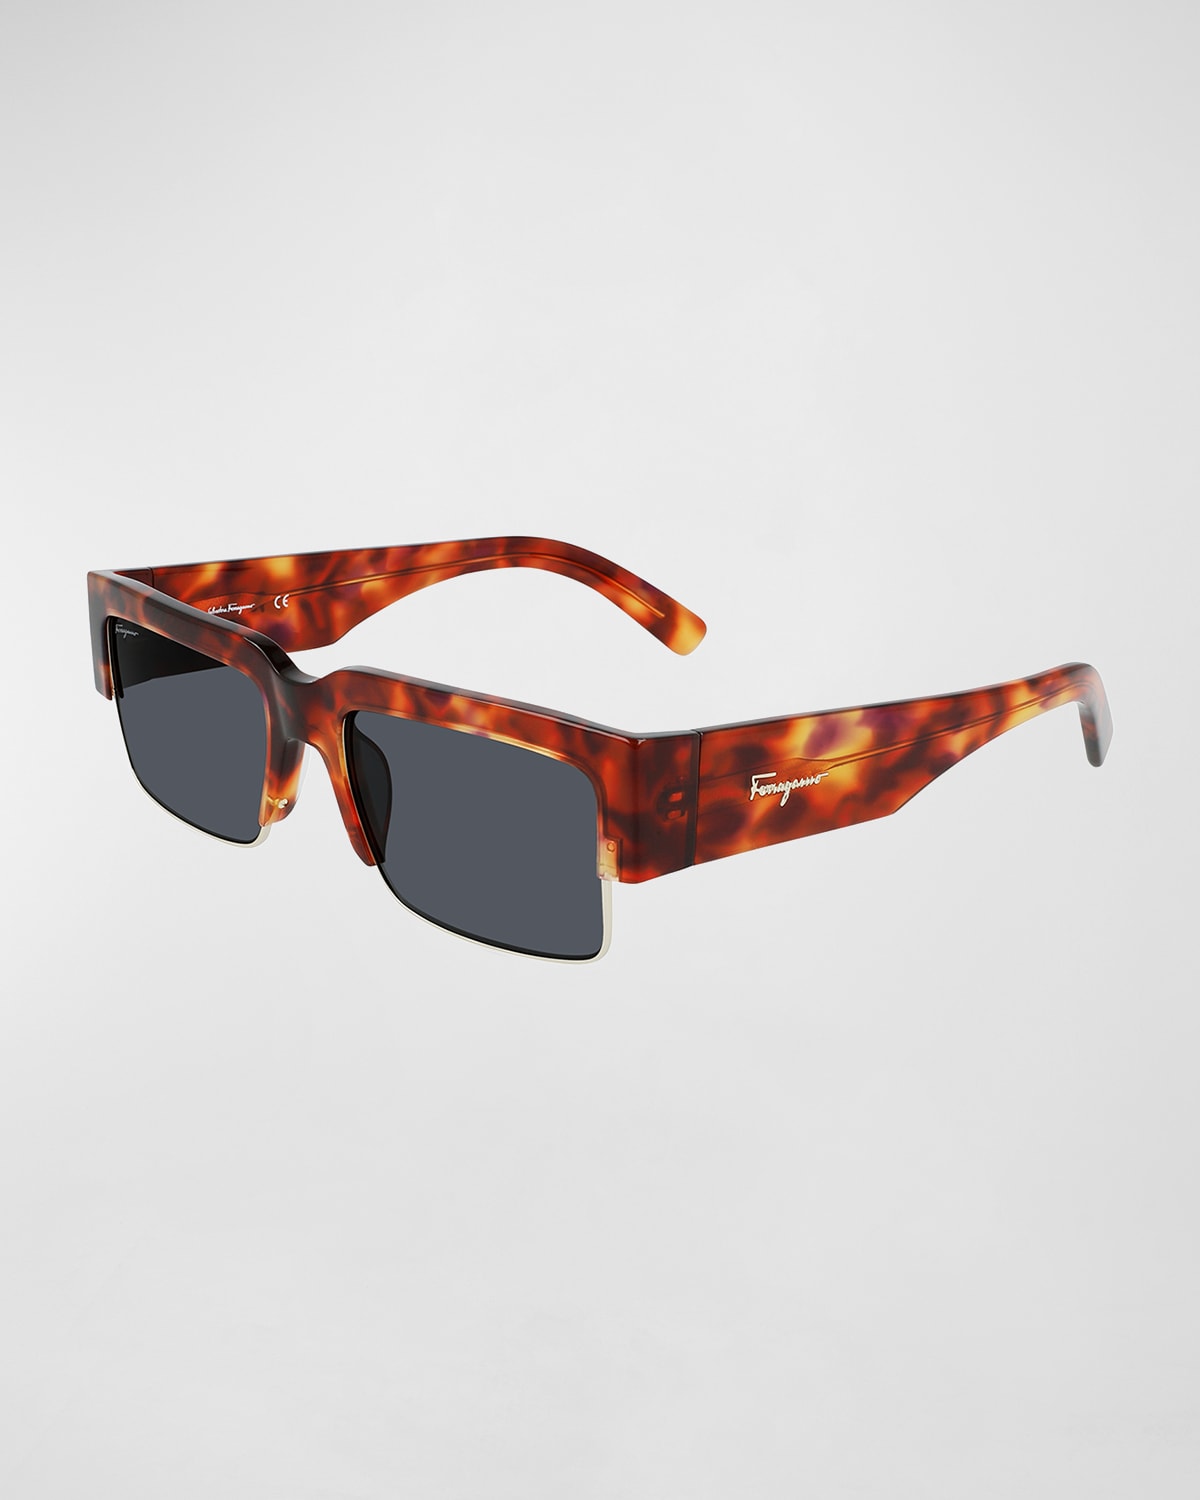 Ferragamo Men's Rectangular Sunglasses With Acetate Brow In Tortoise/gold